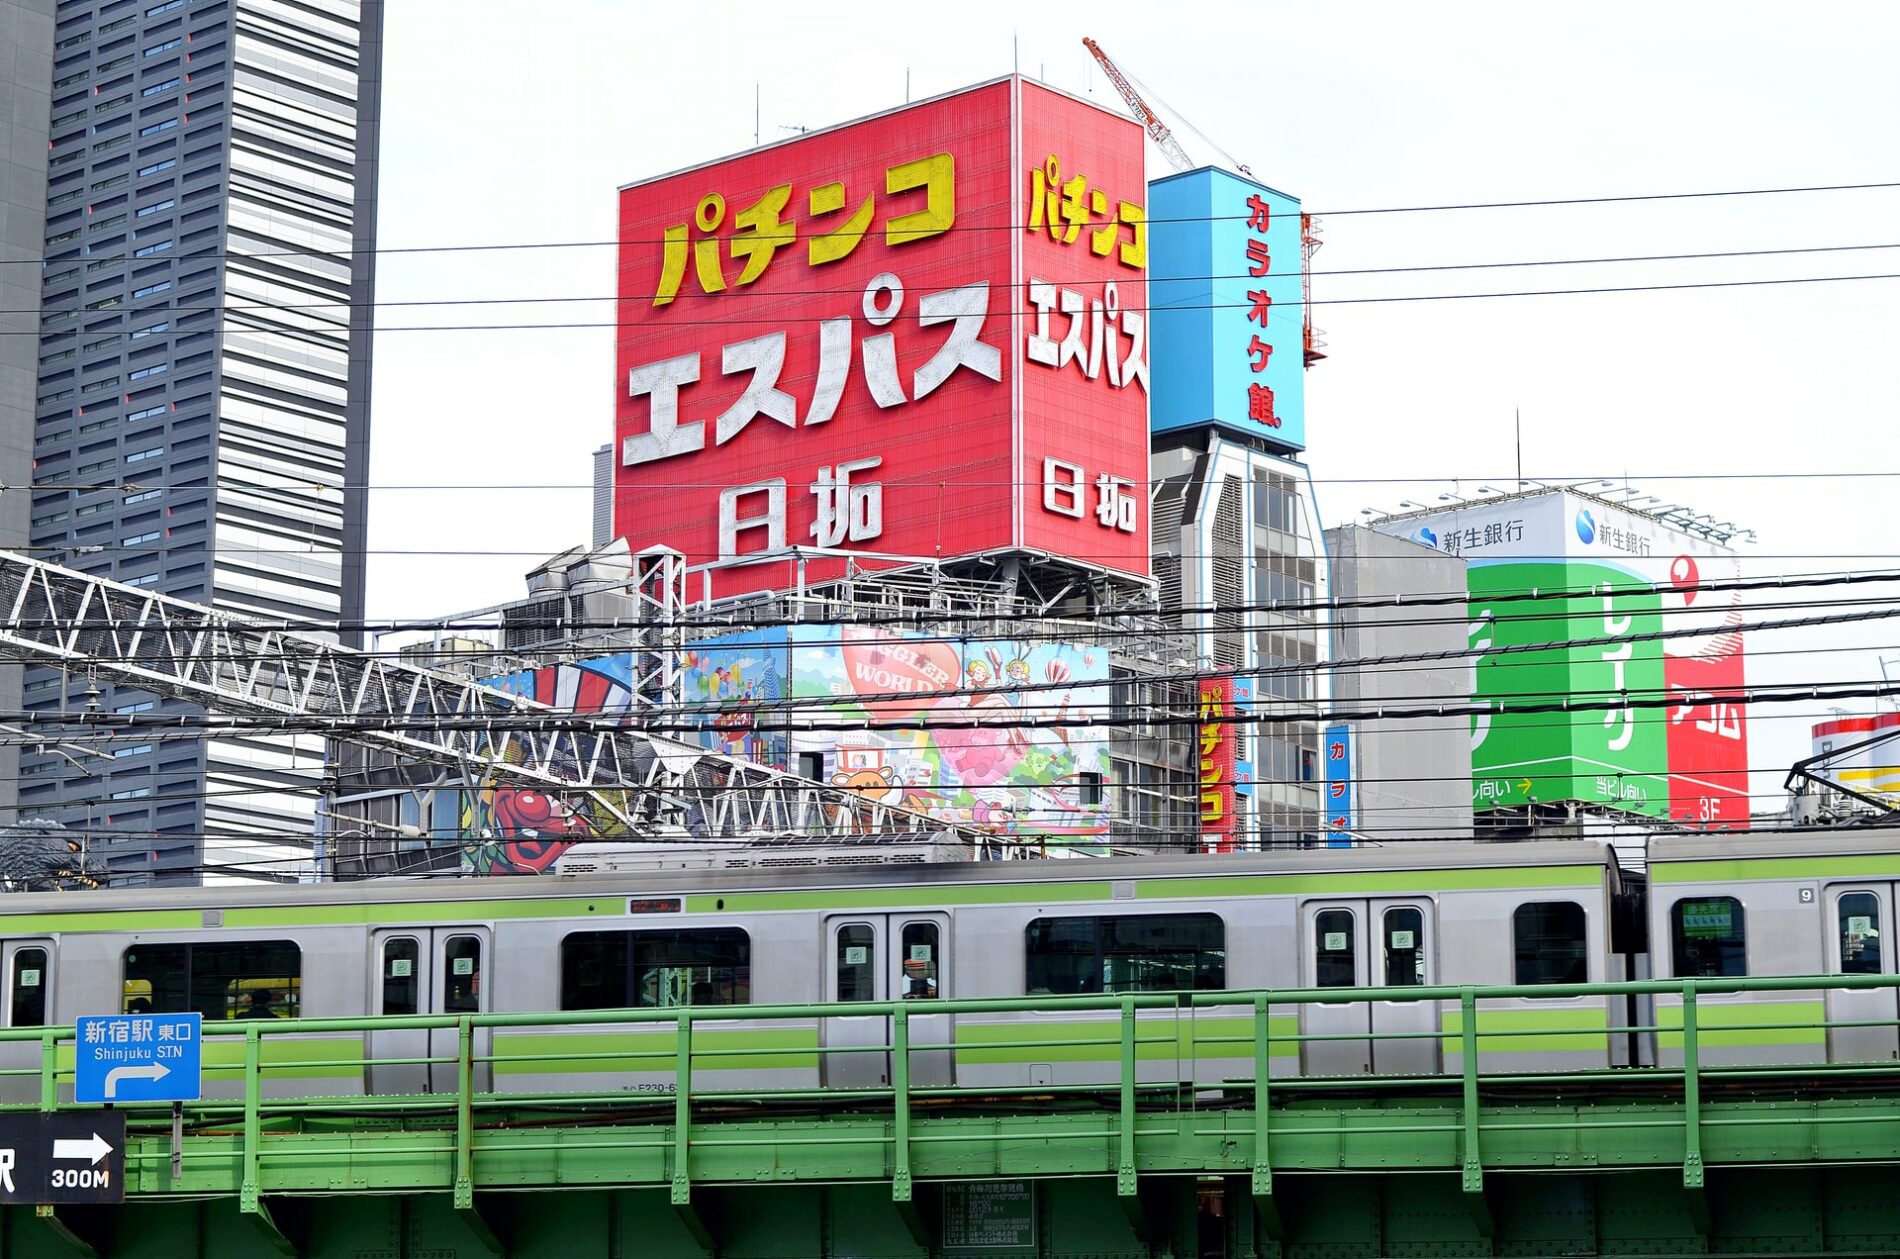 Die Züge der Yamanote Line erkennt man immer sofort an ihrer markanten grünen Farbe. (Foto: Laurentiu Morariu auf Unsplash https://unsplash.com/photos/t8GxbpCGEM8)